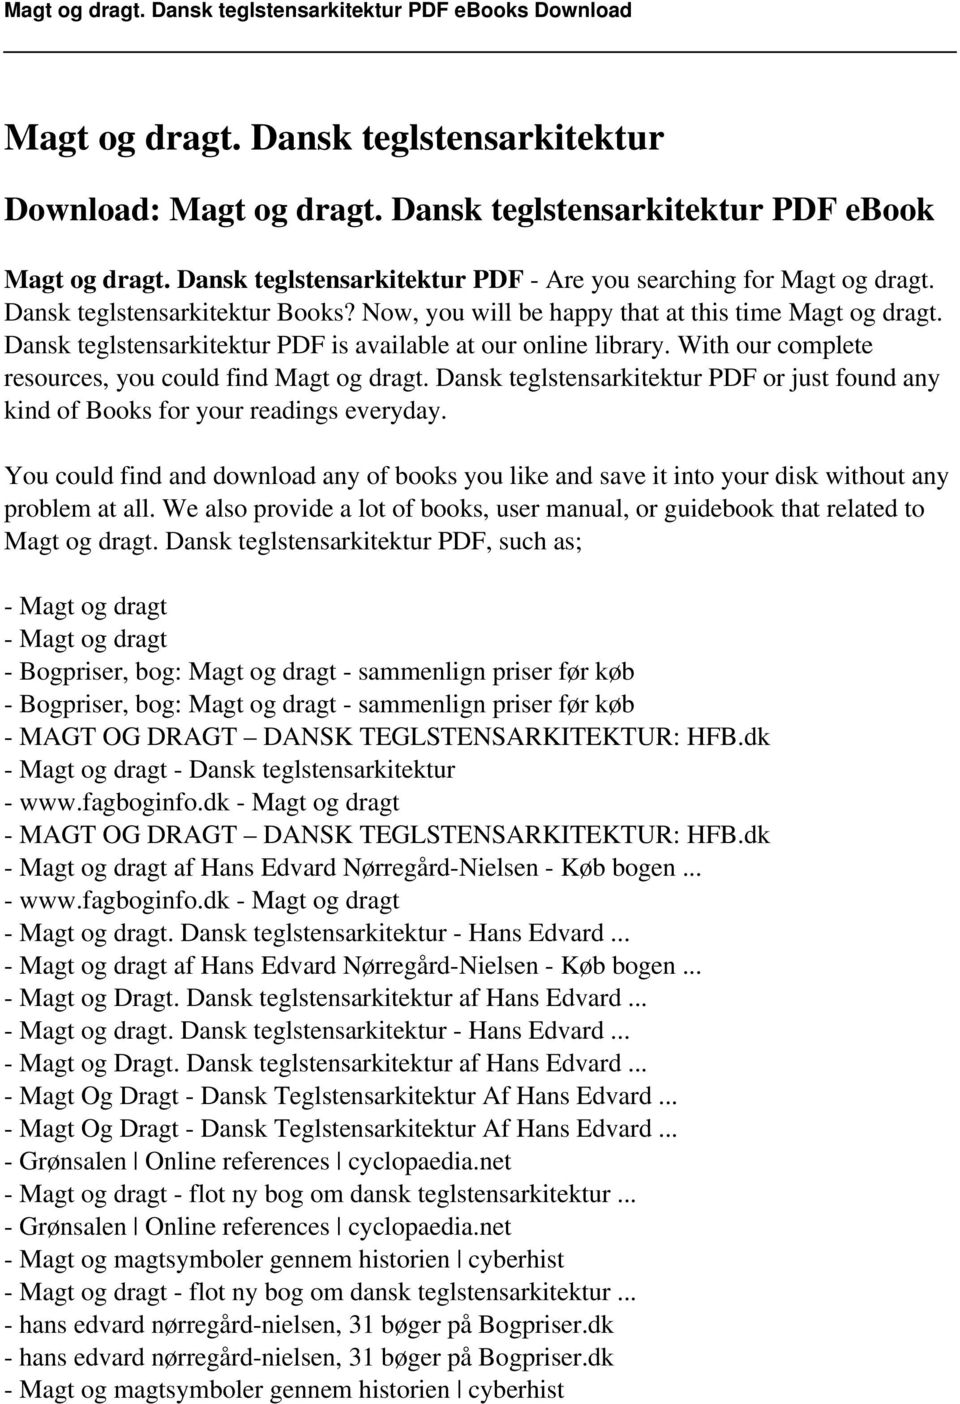 PDF]MAGT OG DRAGT - FLOT NY BOG OM DANSK TEGLSTENSARKITEKTUR... - PDF  Gratis download